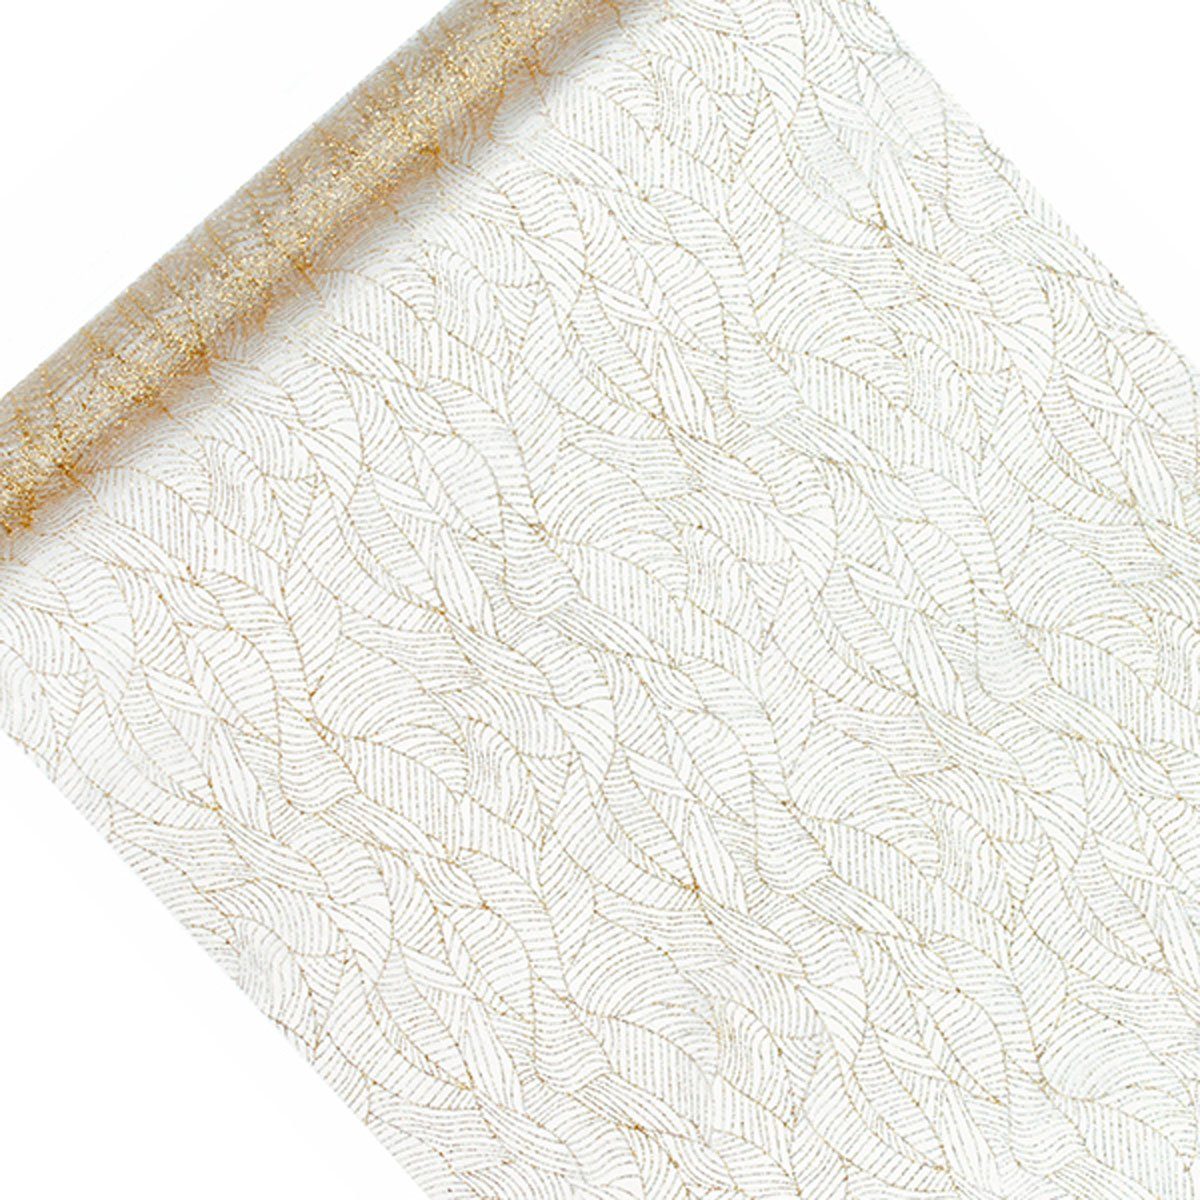 SCHÖNER LEBEN. Tischläufer Deko Tischband Organza bedruckt Blätter weiß gold 0,48x9m | Tischläufer